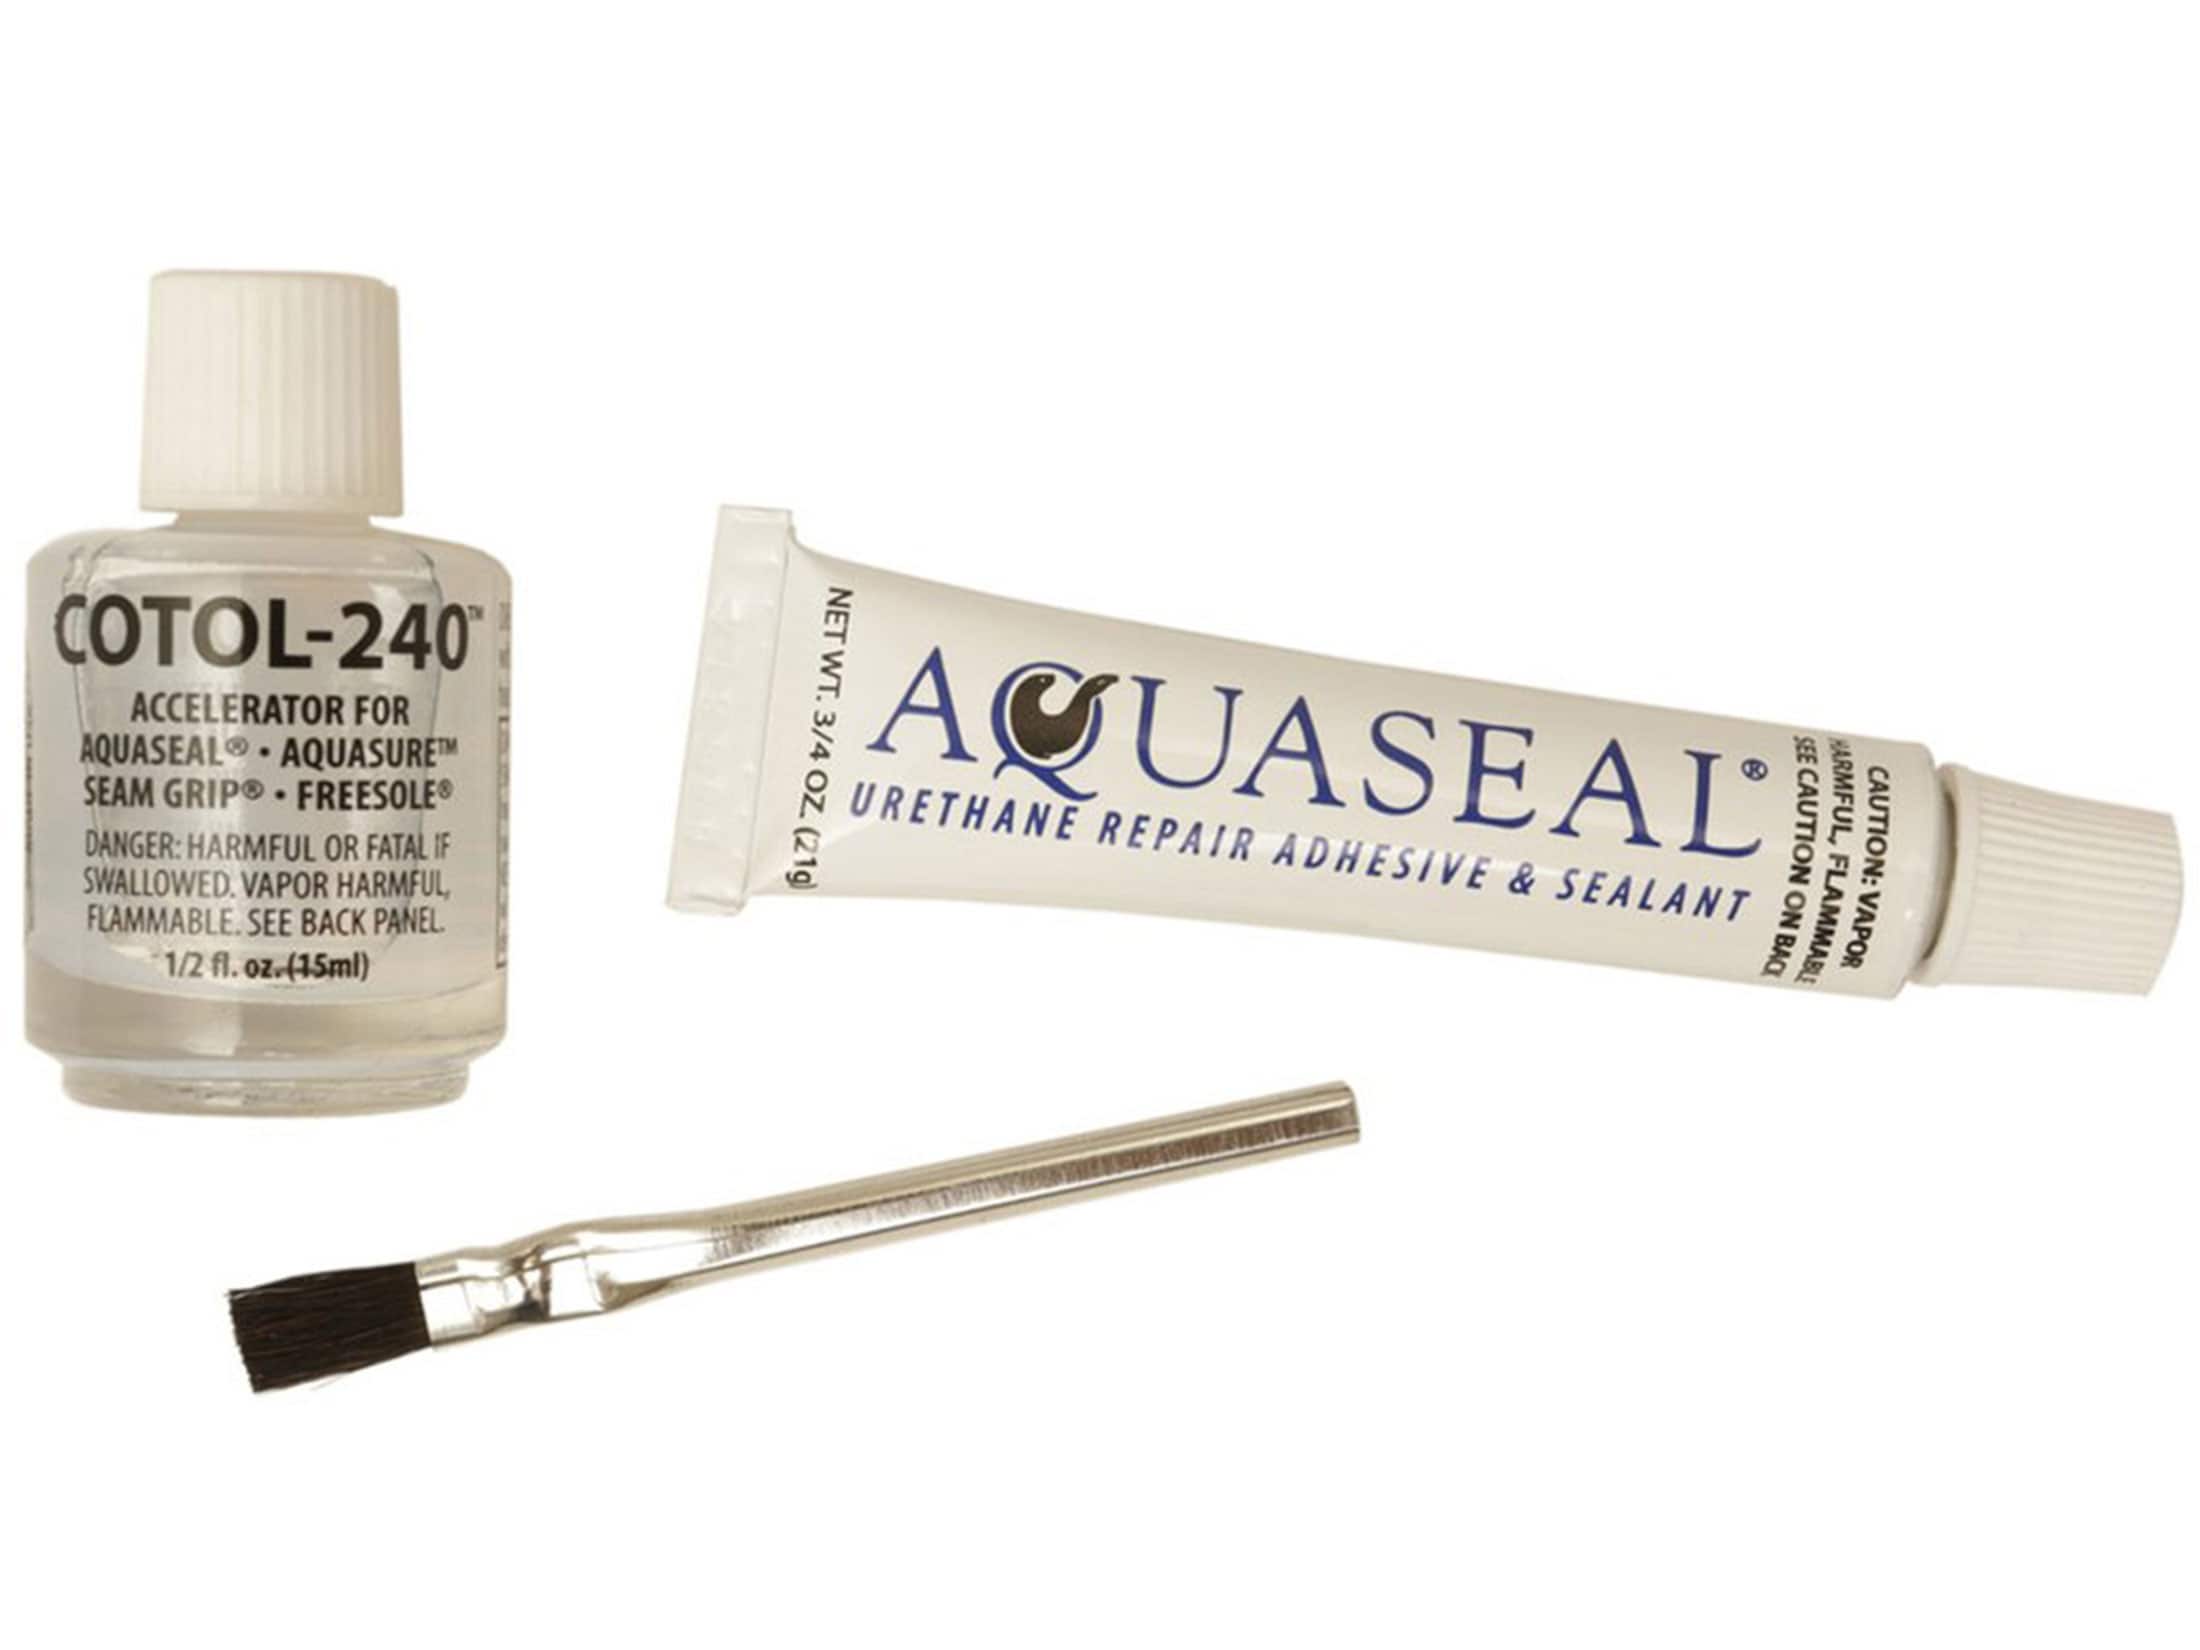 Gear Aid Aquaseal Waterproof Repair Adhesive Kit Cure Accelerator